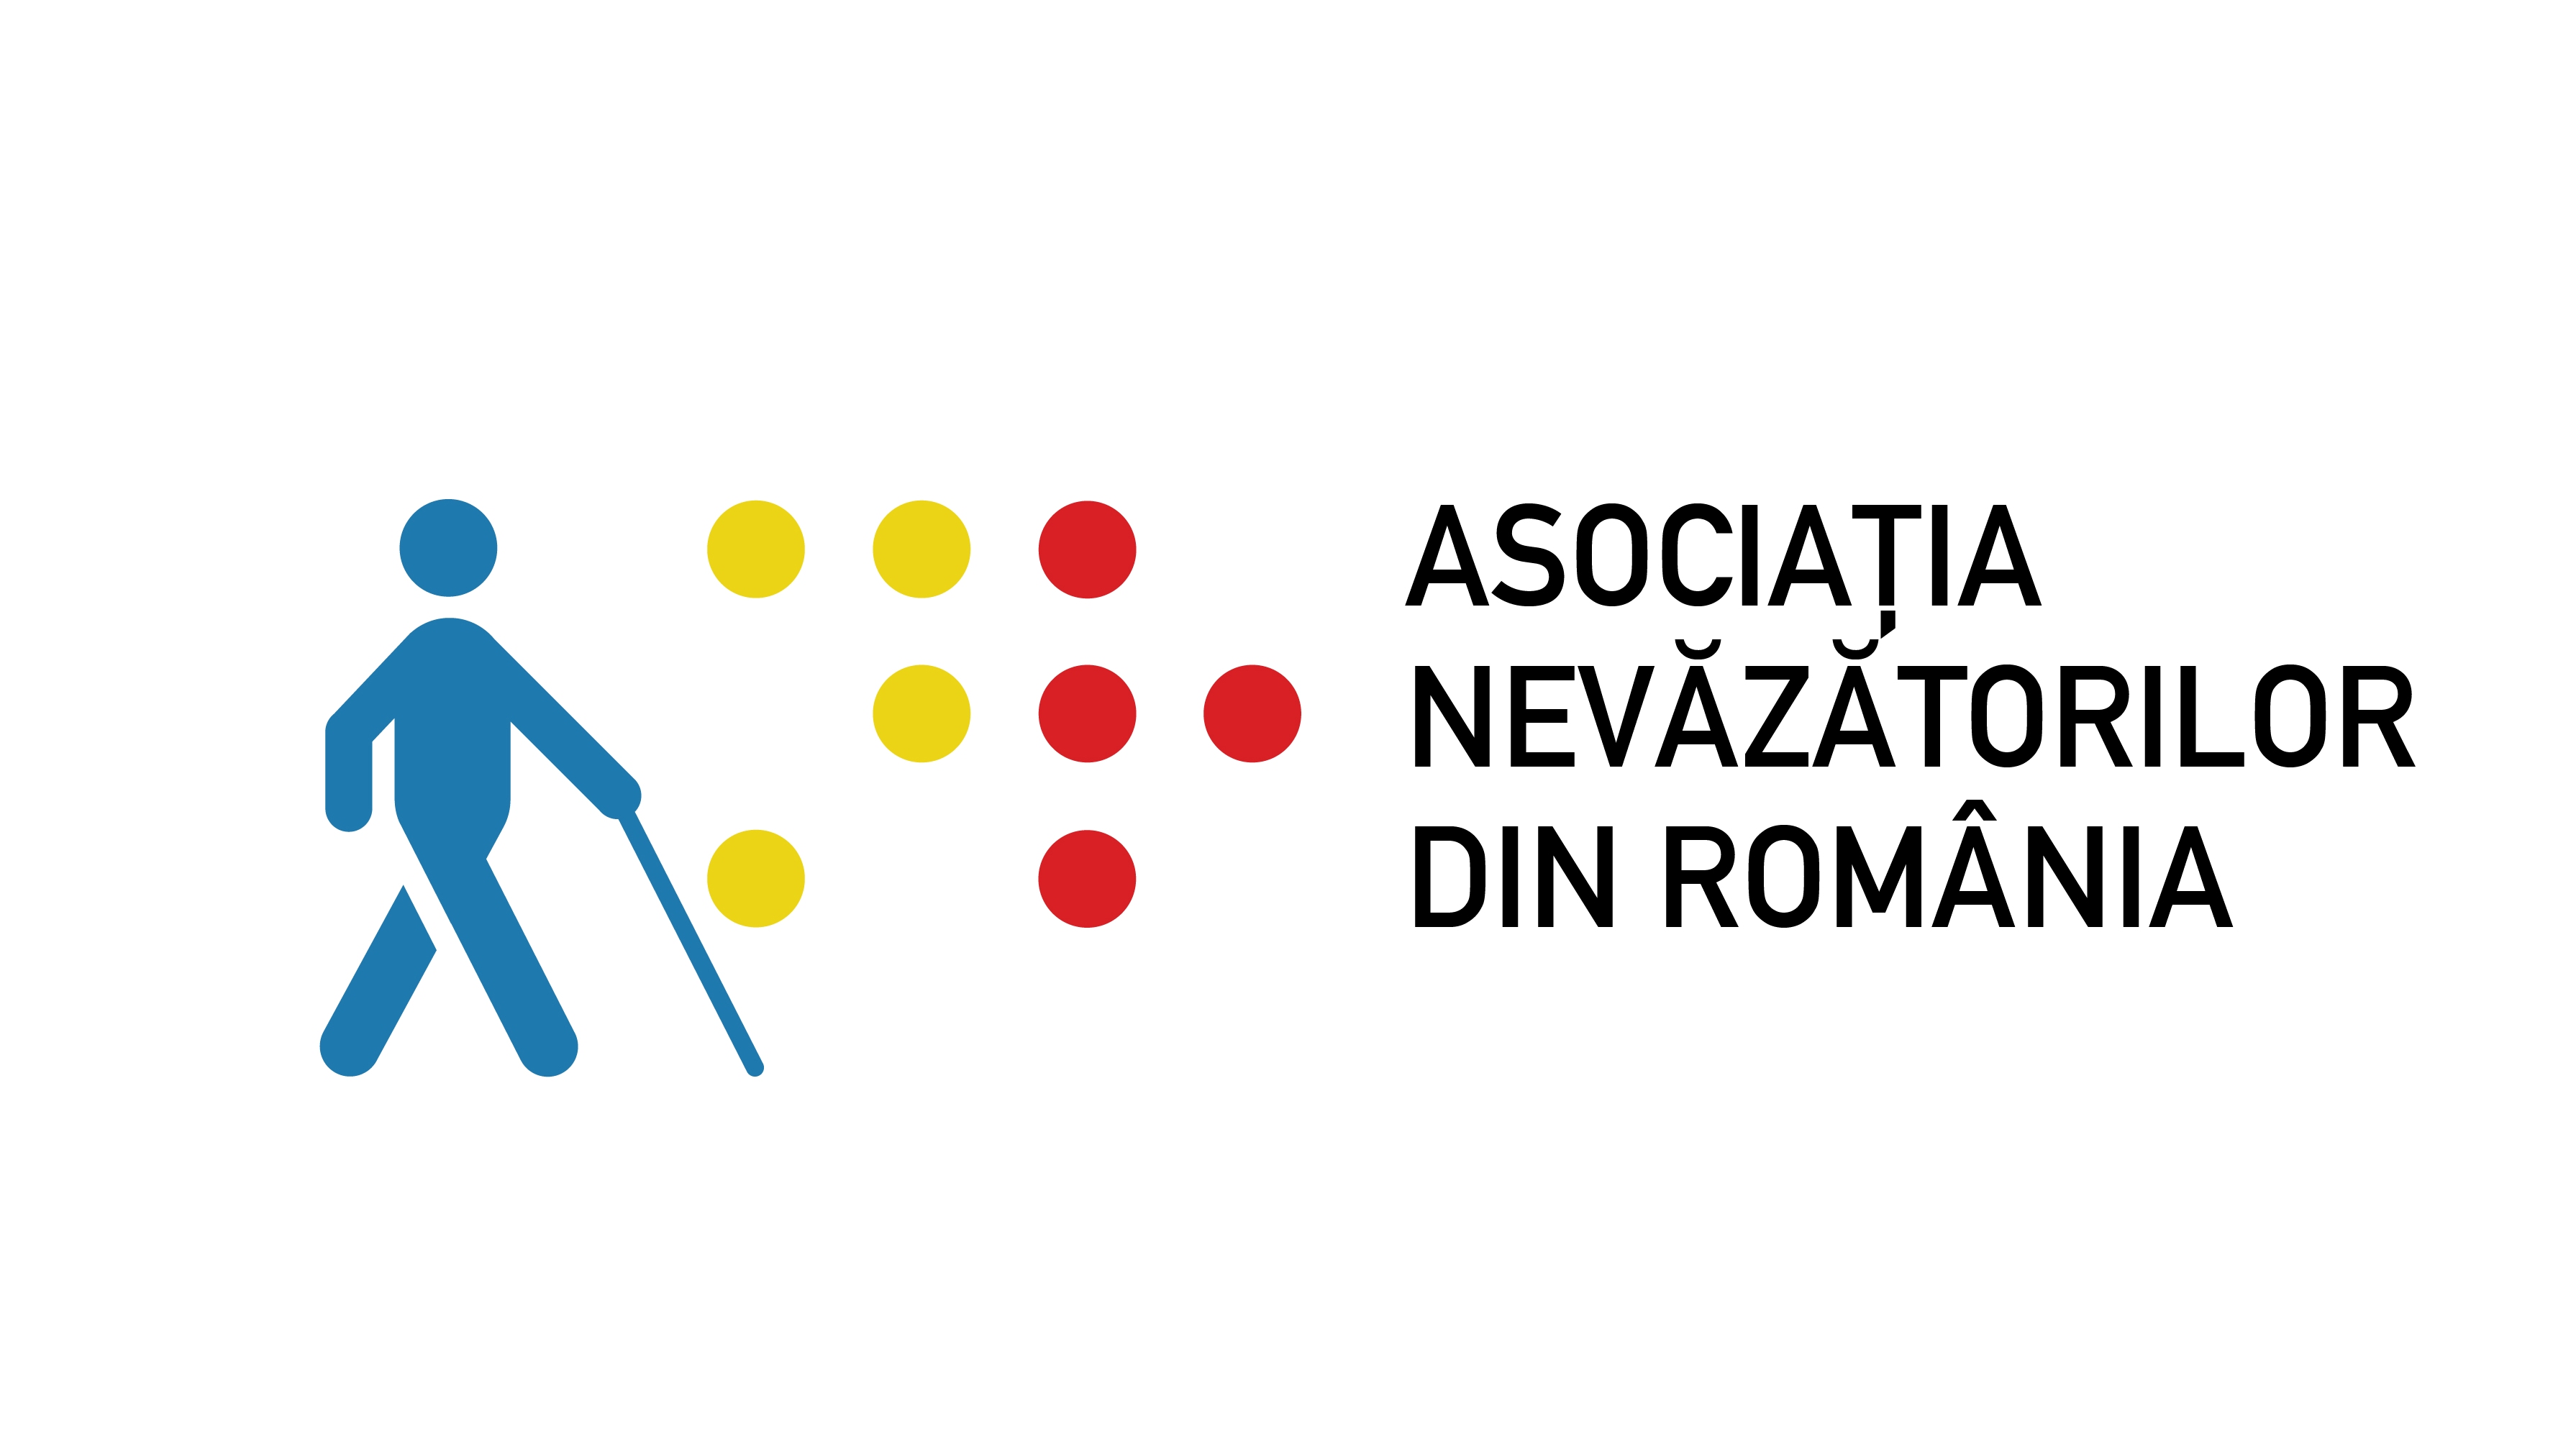 Asociatia Nevazatorilor din Romania logo